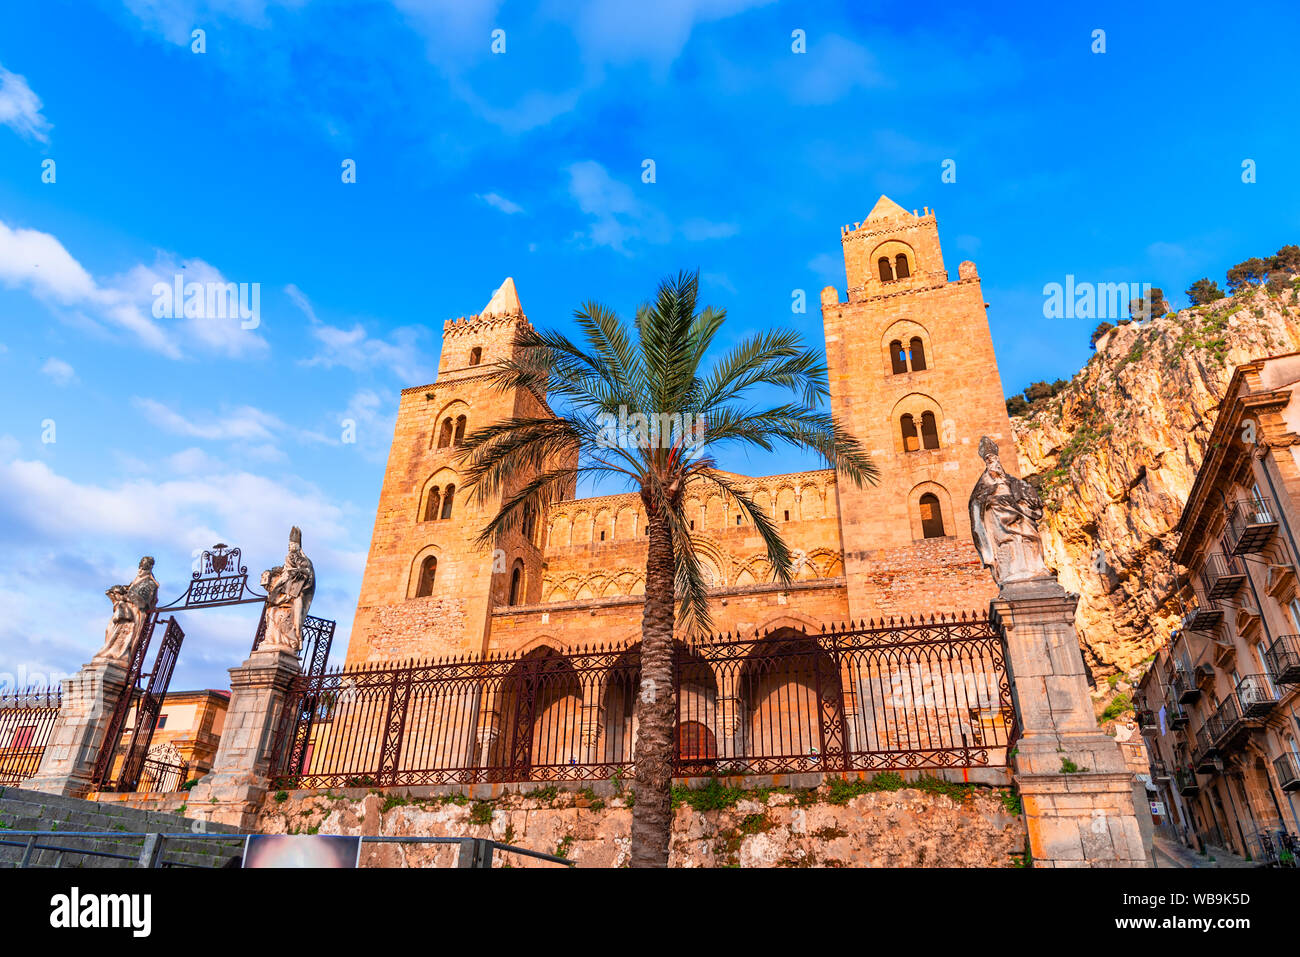 Cefalu, Sicilia, Italia: plaza con la Catedral o Basílica de Cefalù, una iglesia romana católica construida en el estilo normando. Foto de stock